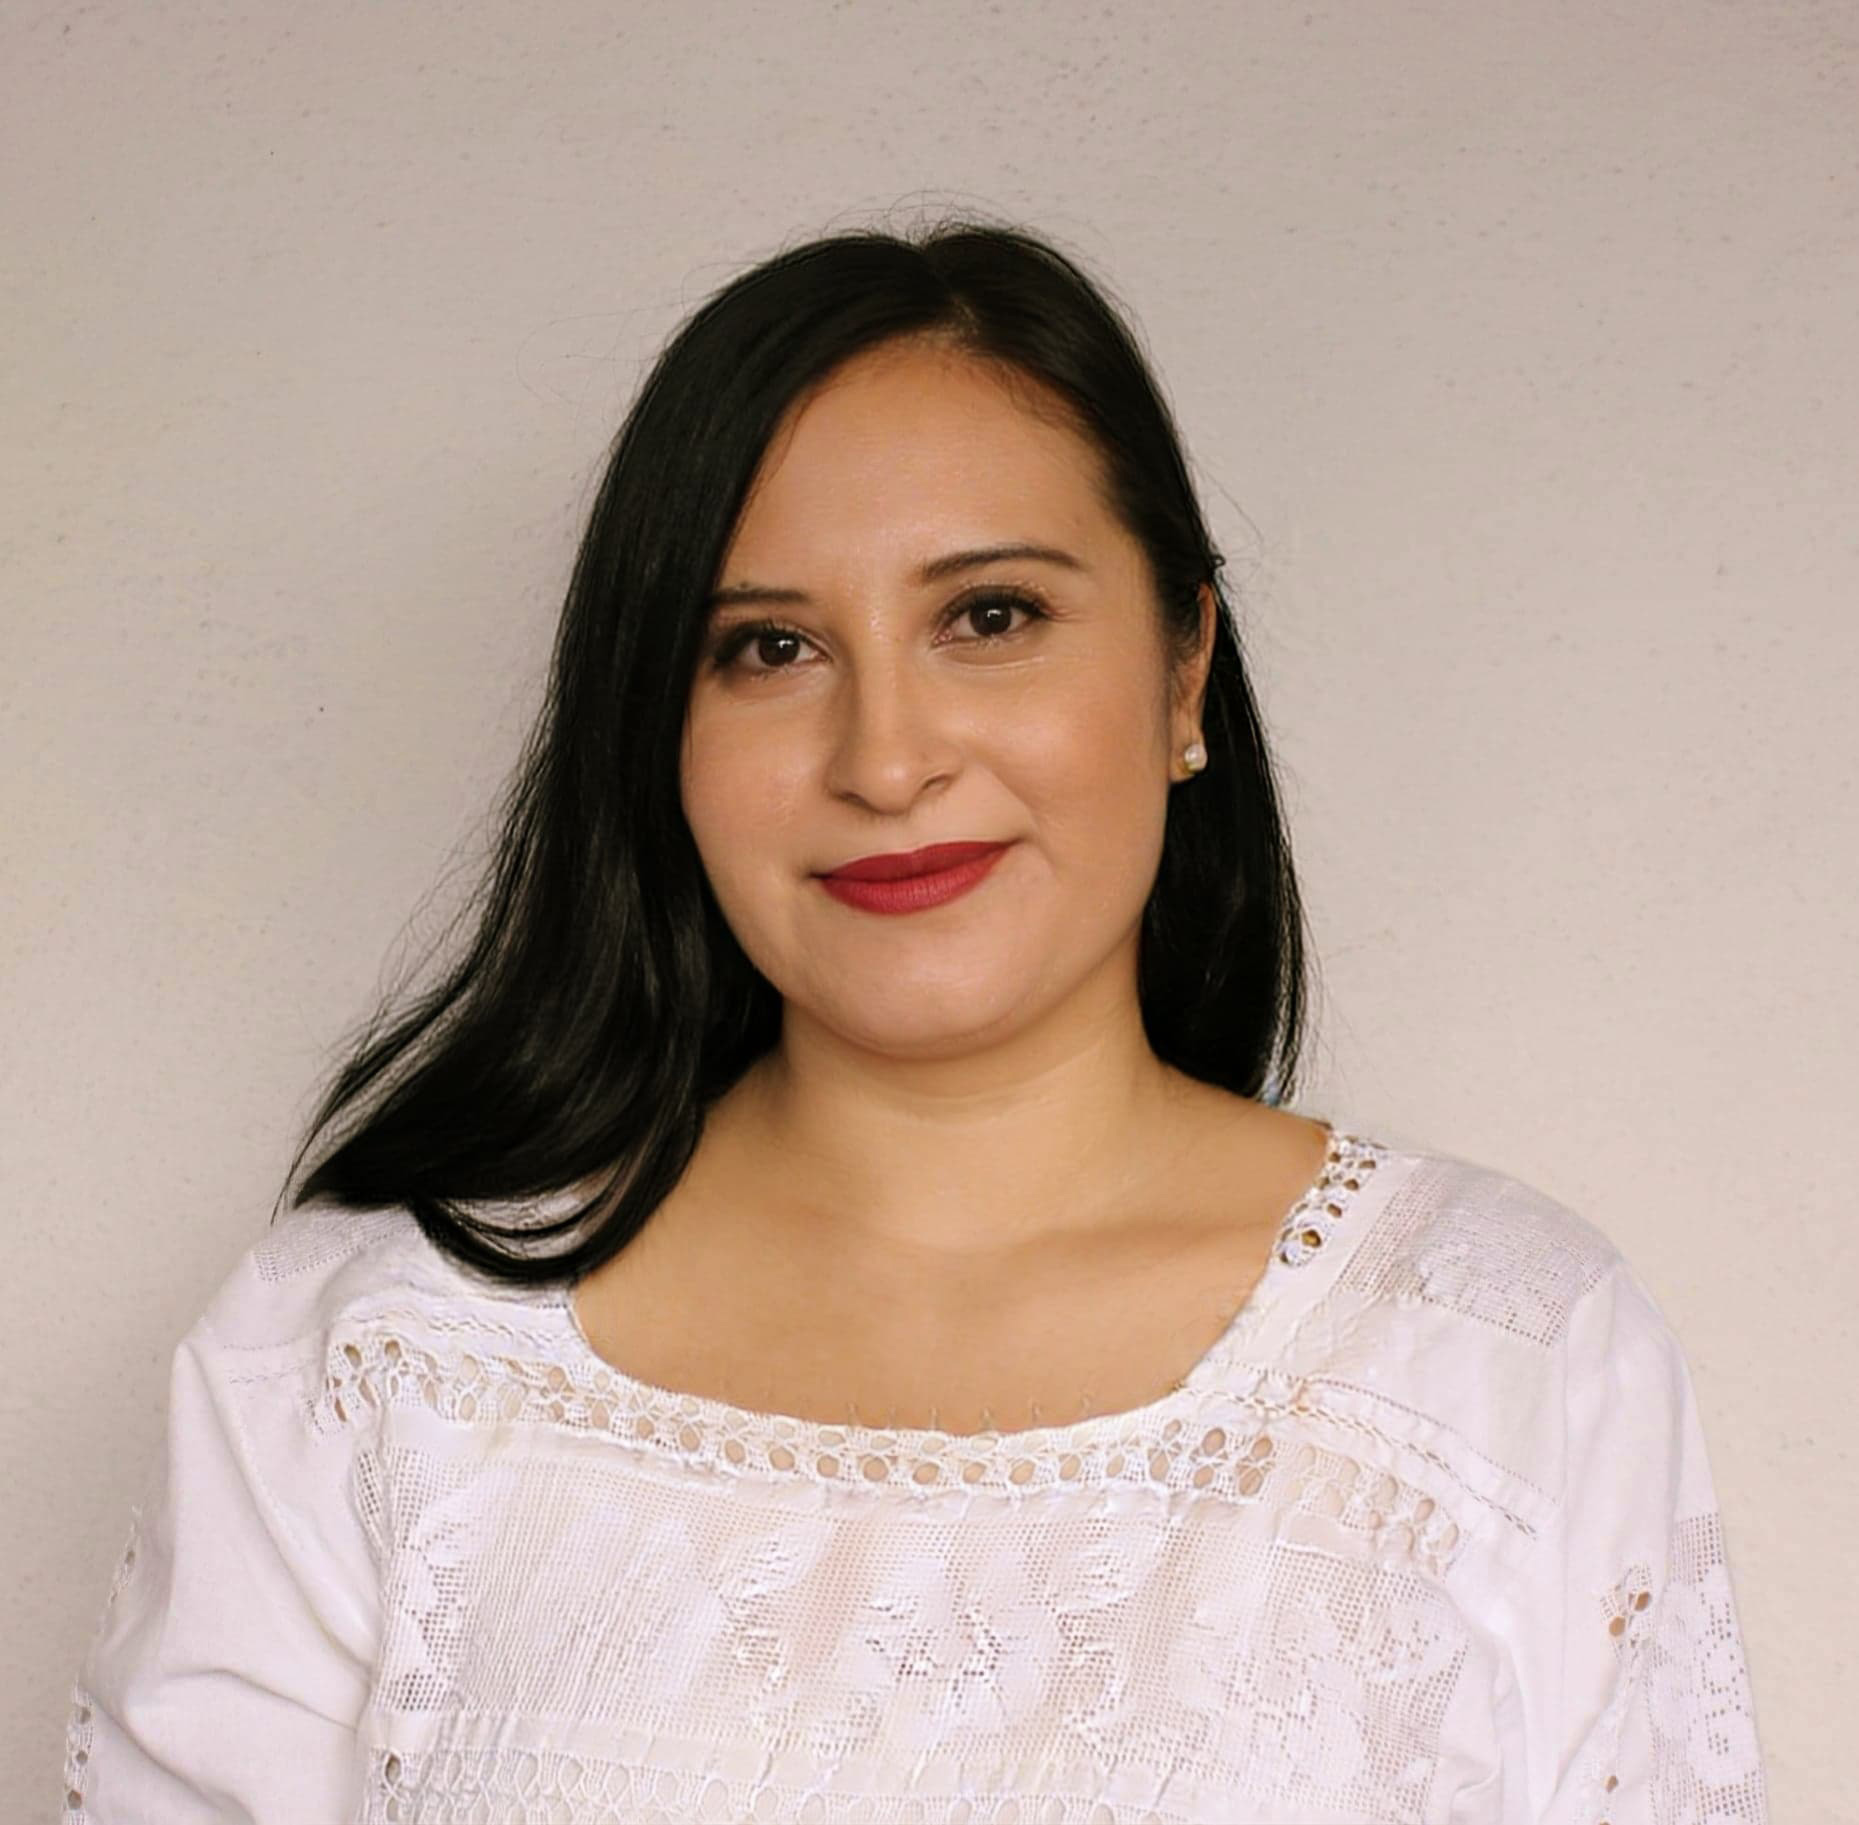 Maria Gutierrez